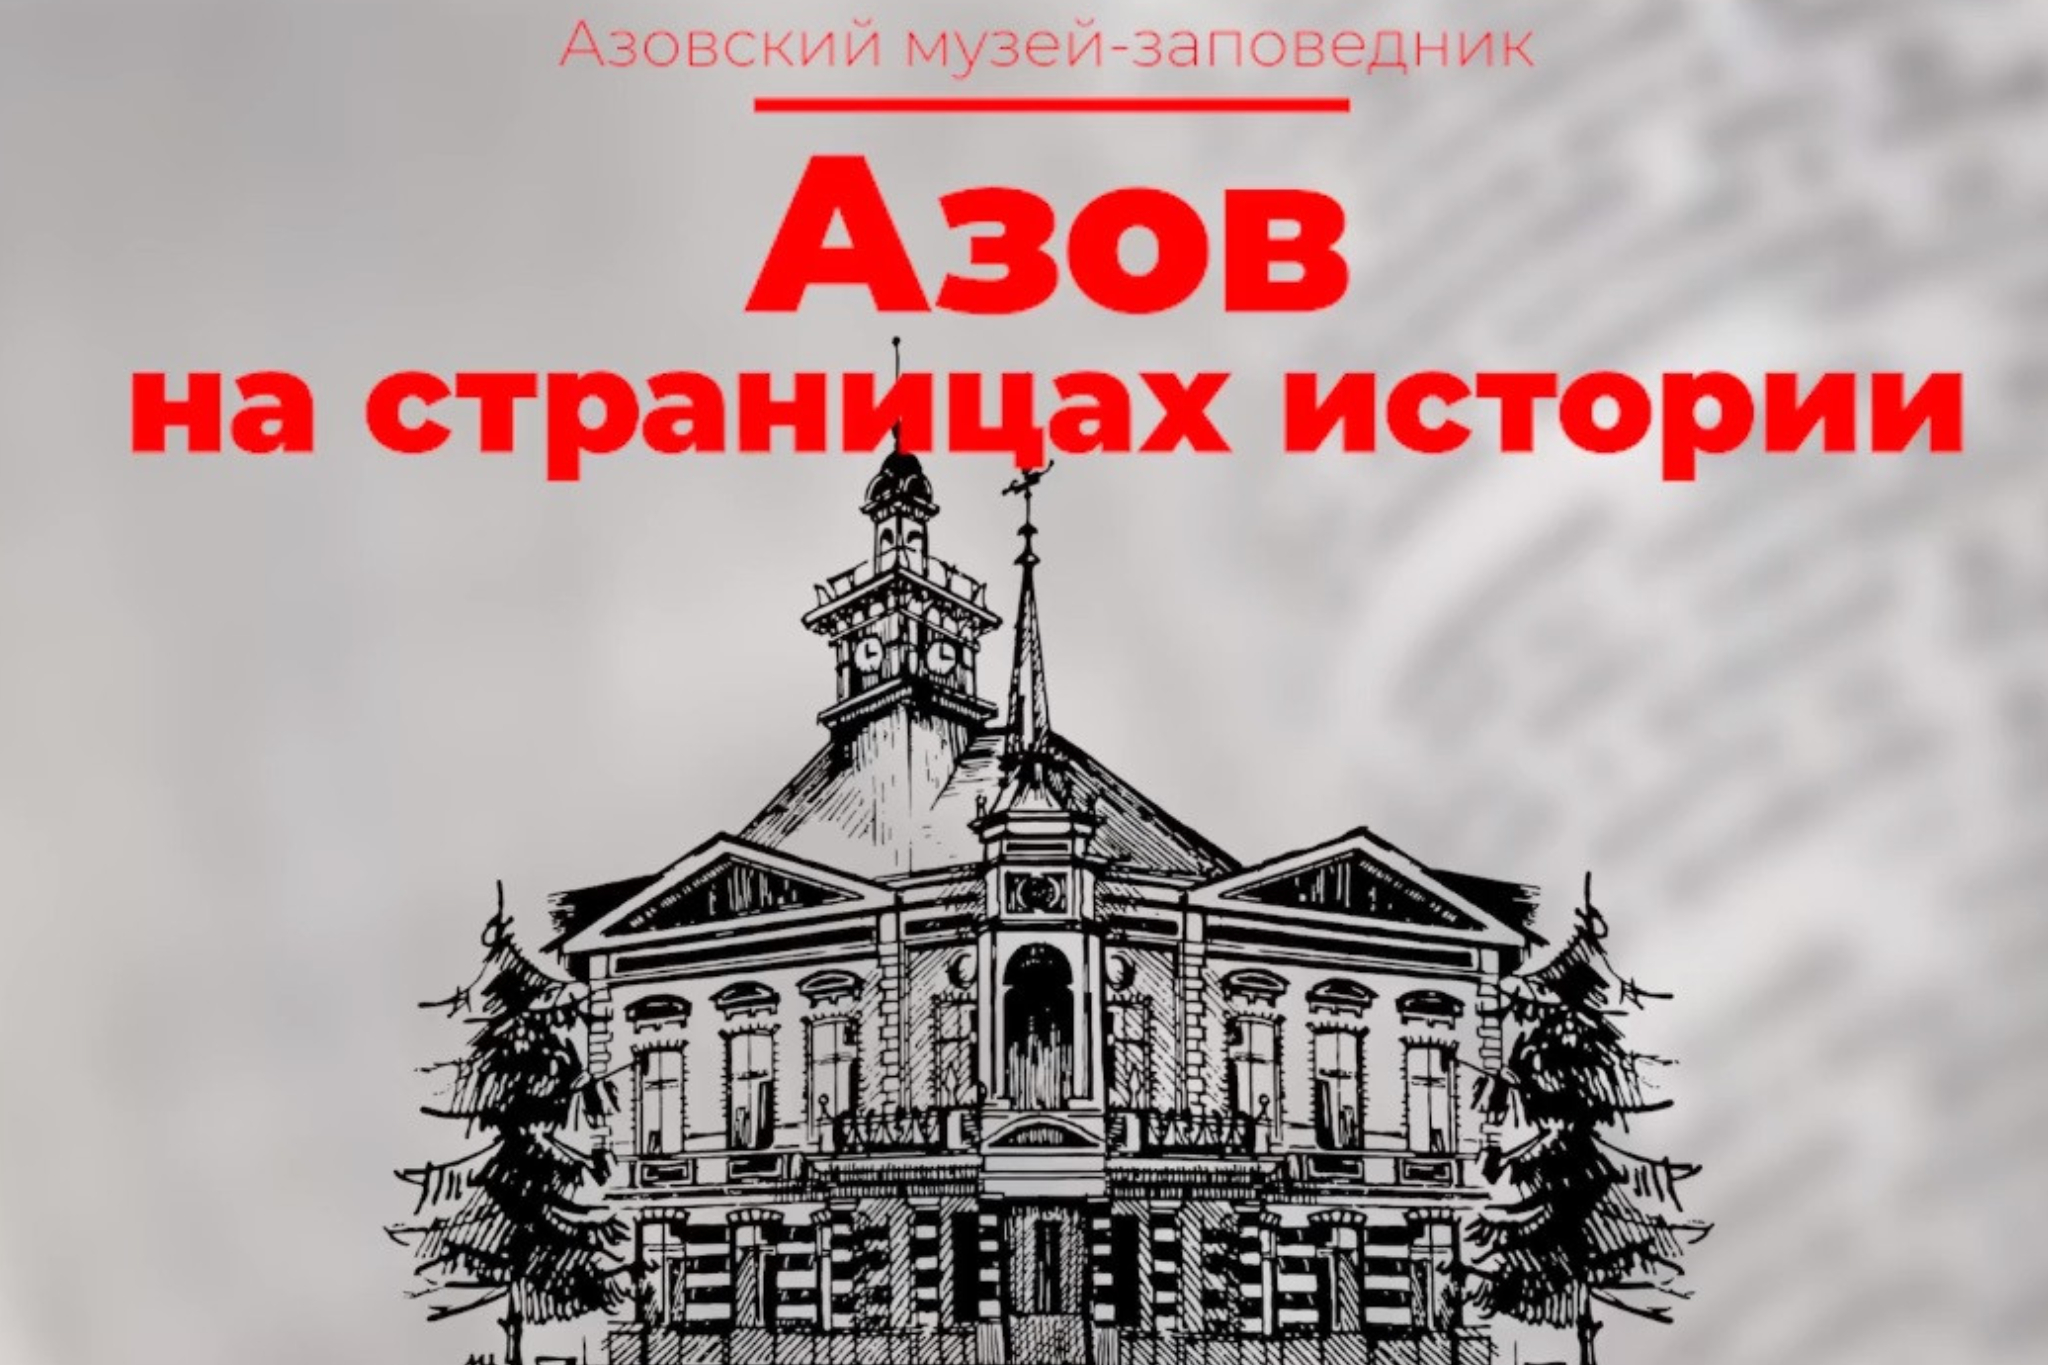 Азов на страницах истории